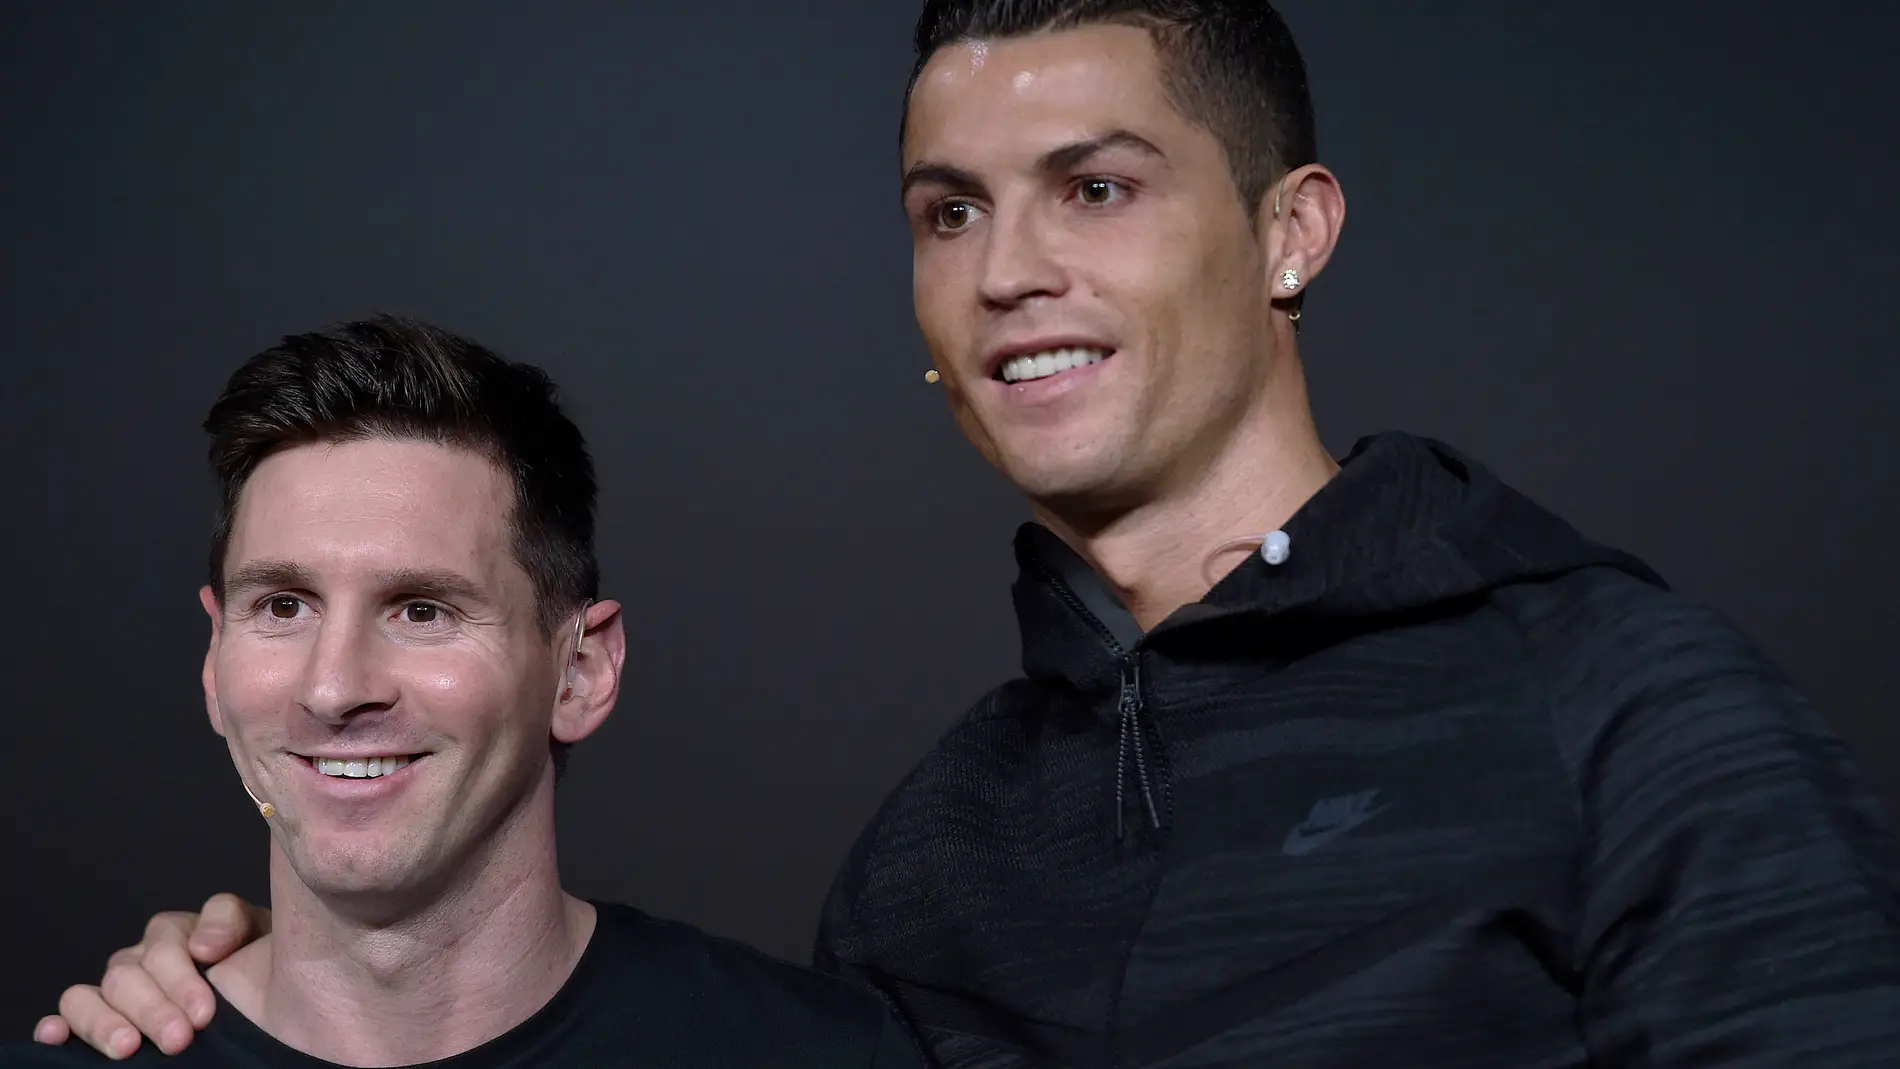 Messi y Cristiano Ronaldo